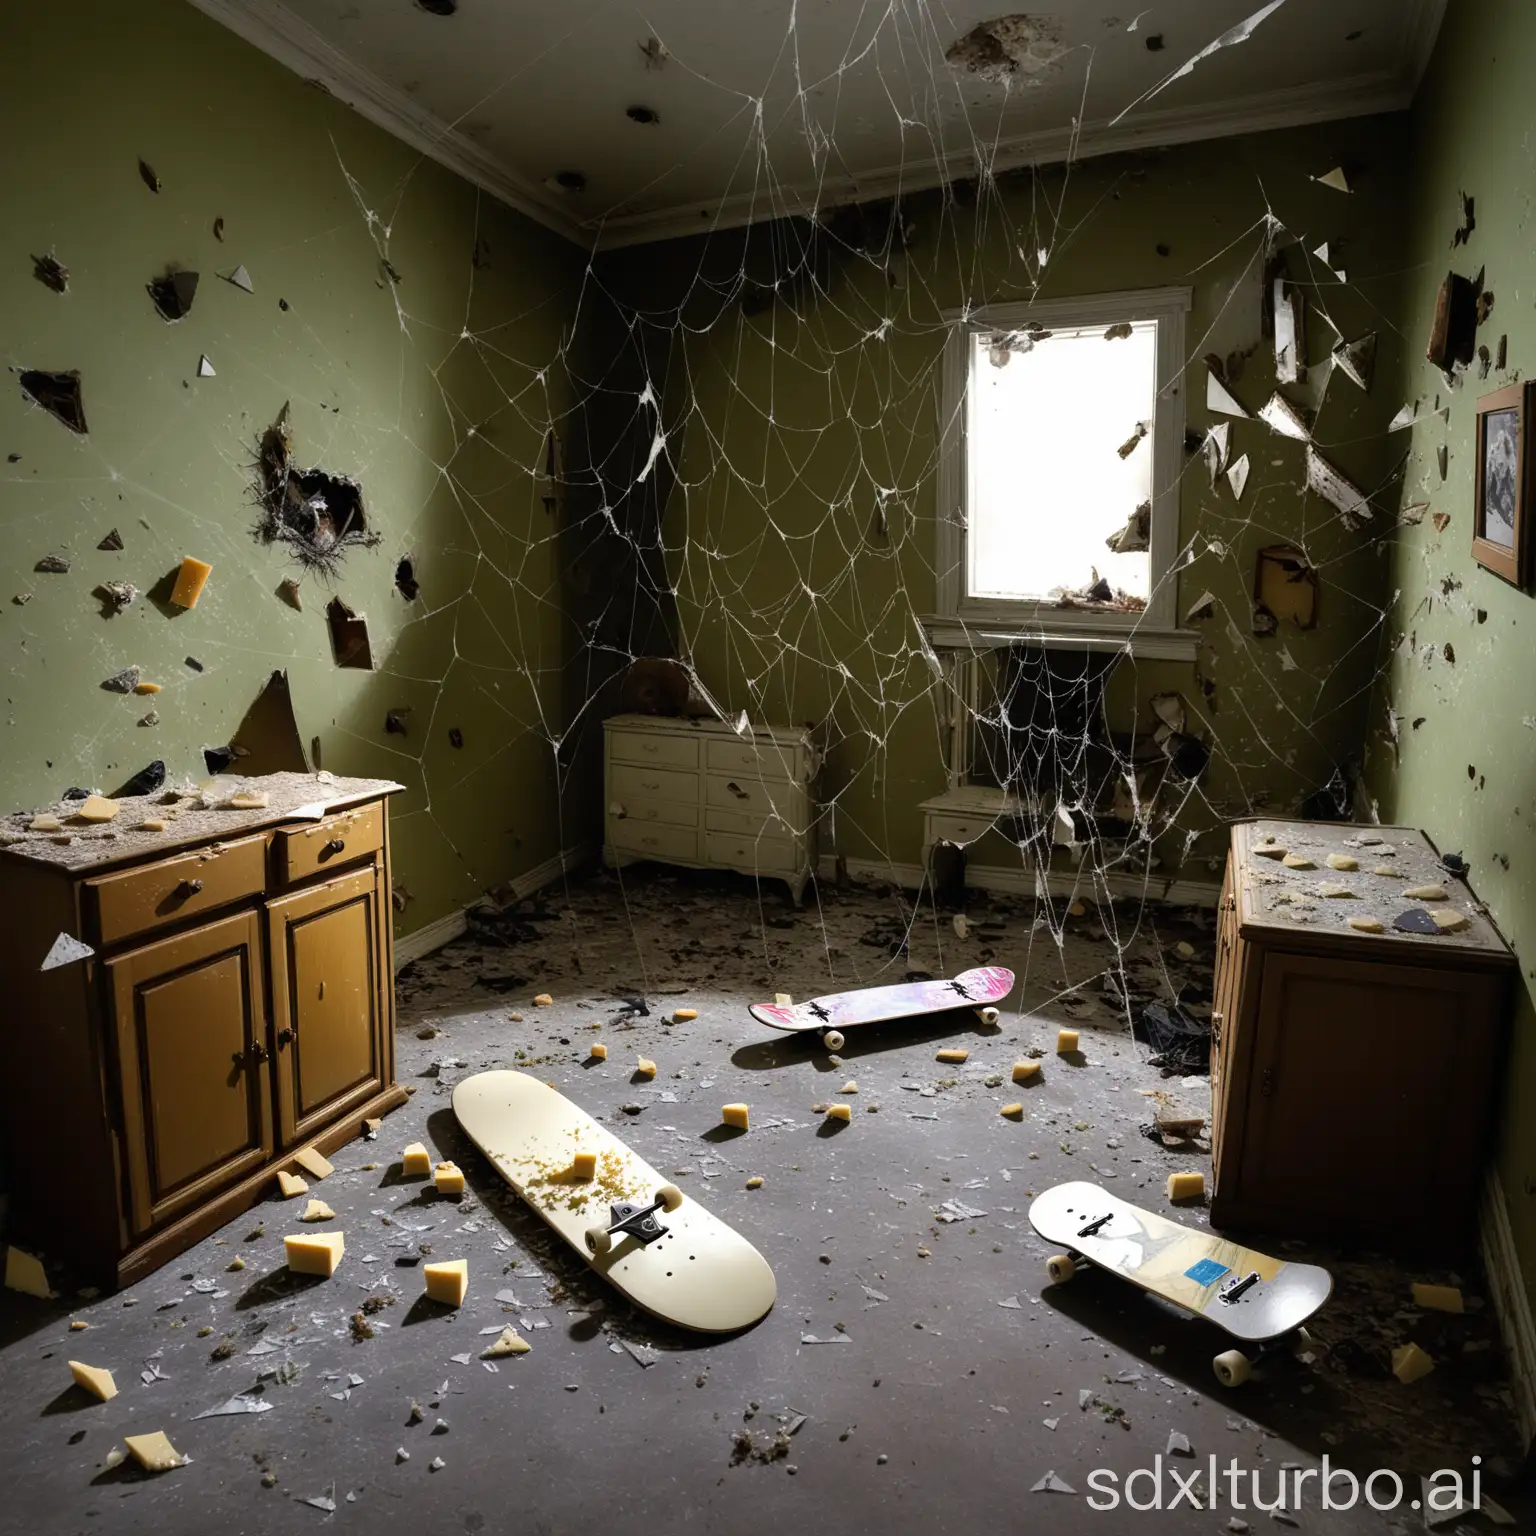 Ein kleiner Raum überall Spinnweben. in der einen Ecke eine tote Ratte. Mitten im Raum ein zerbrochenes Skateboard und viele Scherben. Ein verschimmeltes Käsebrot. Rechts an der Wand ein alter Schrank.